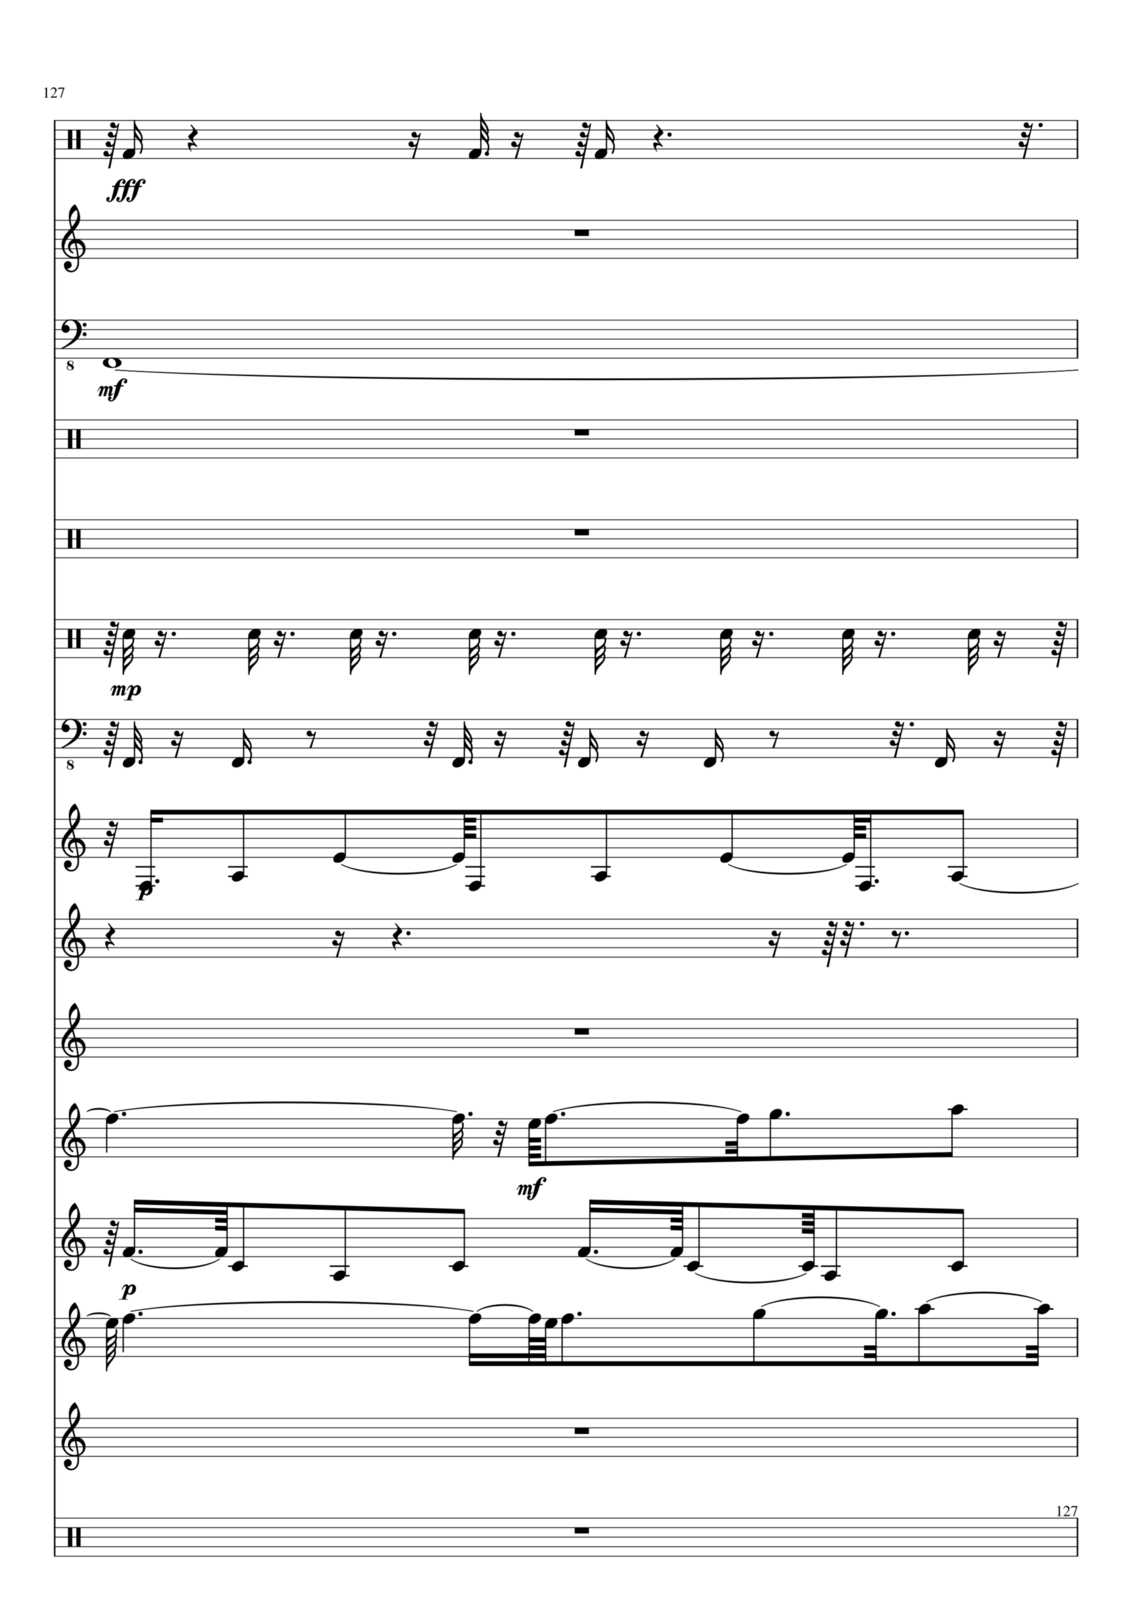 Utro polinyi slide, Image 127